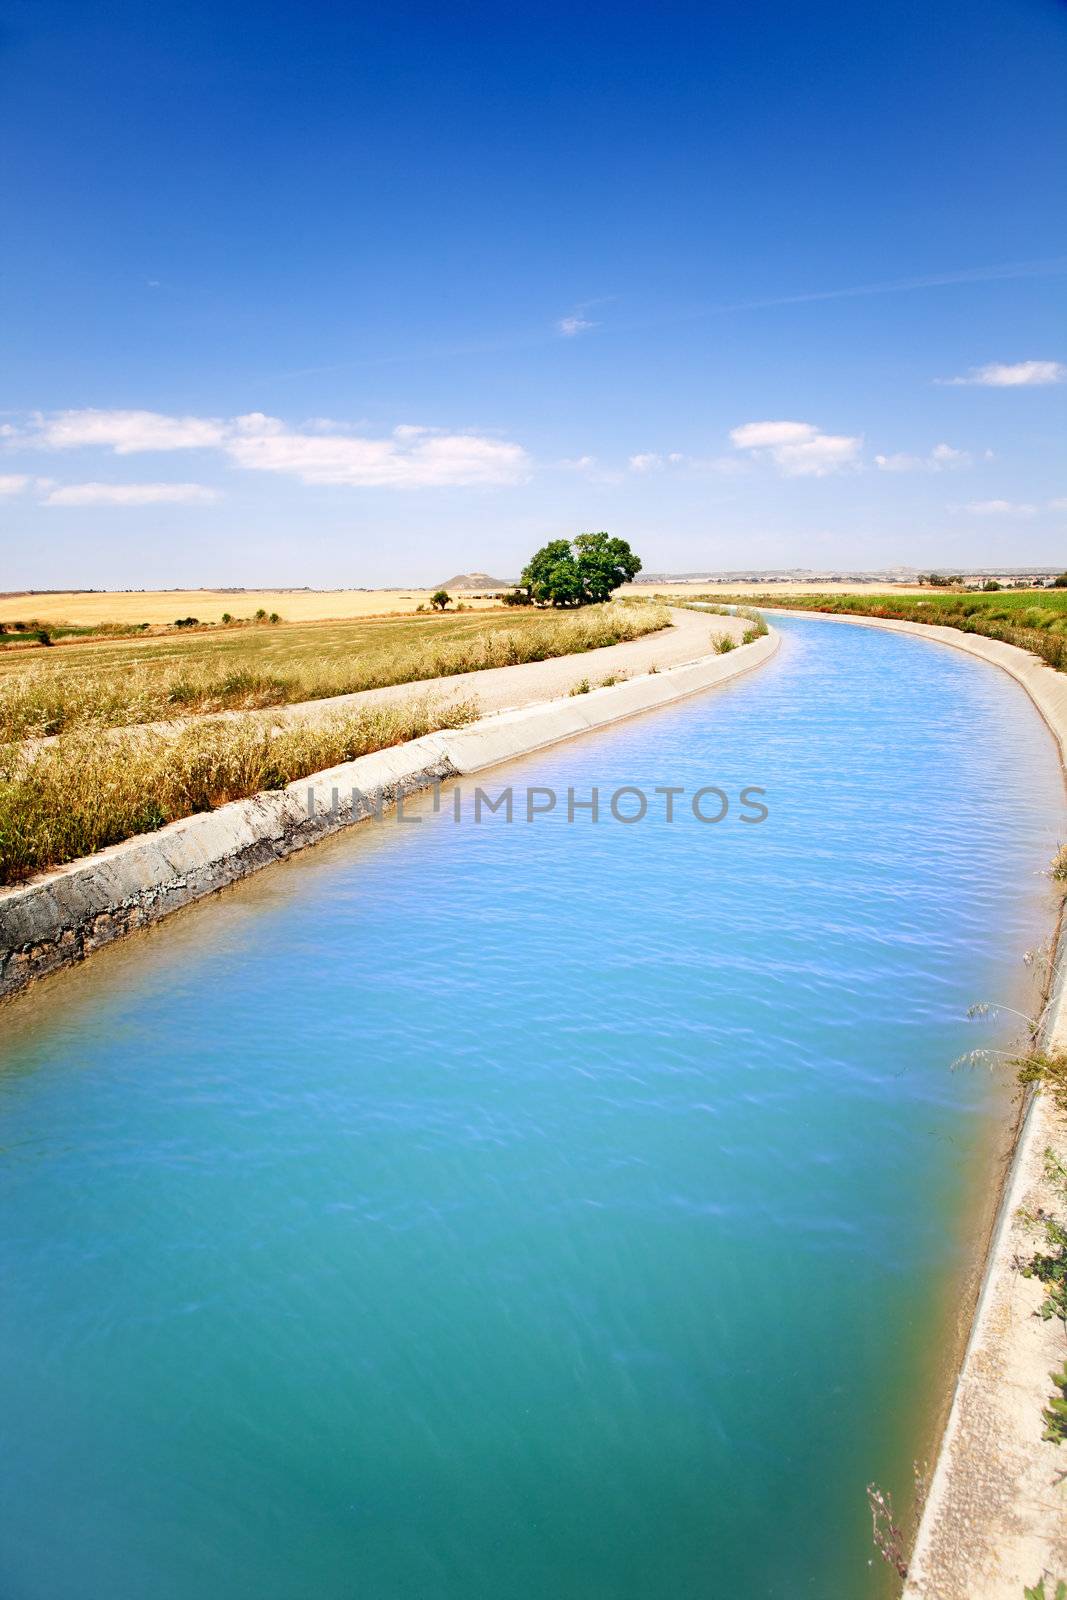 water channel by carloscastilla